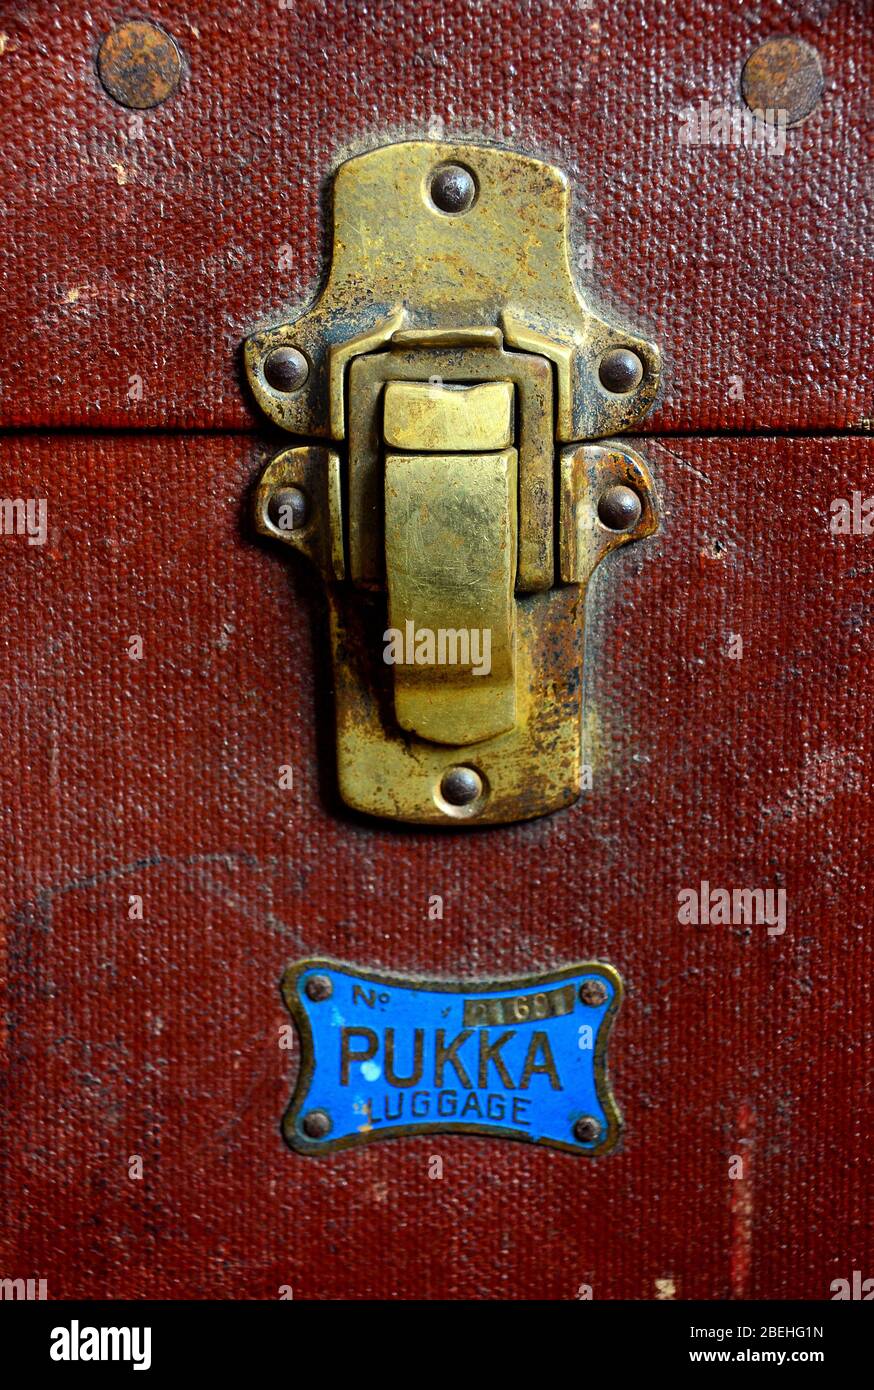 Dettaglio di un bullone trafilato su un vecchio tronco di vaporiera con la parola pukka sotto di esso. Foto Stock